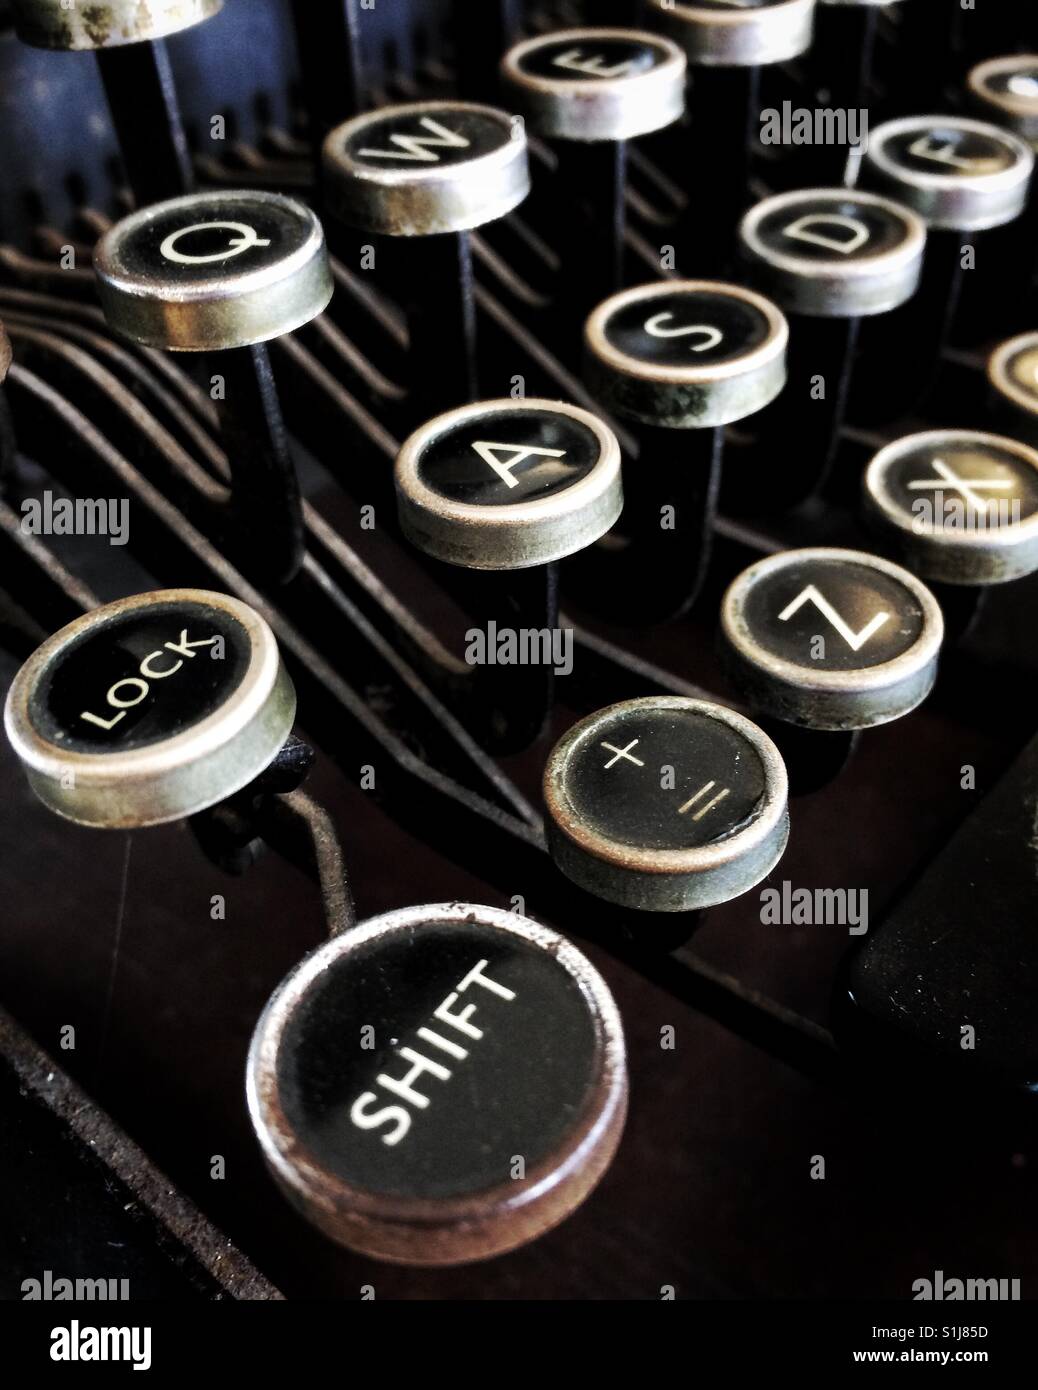 Détail d'un clavier qwerty Photo Stock - Alamy